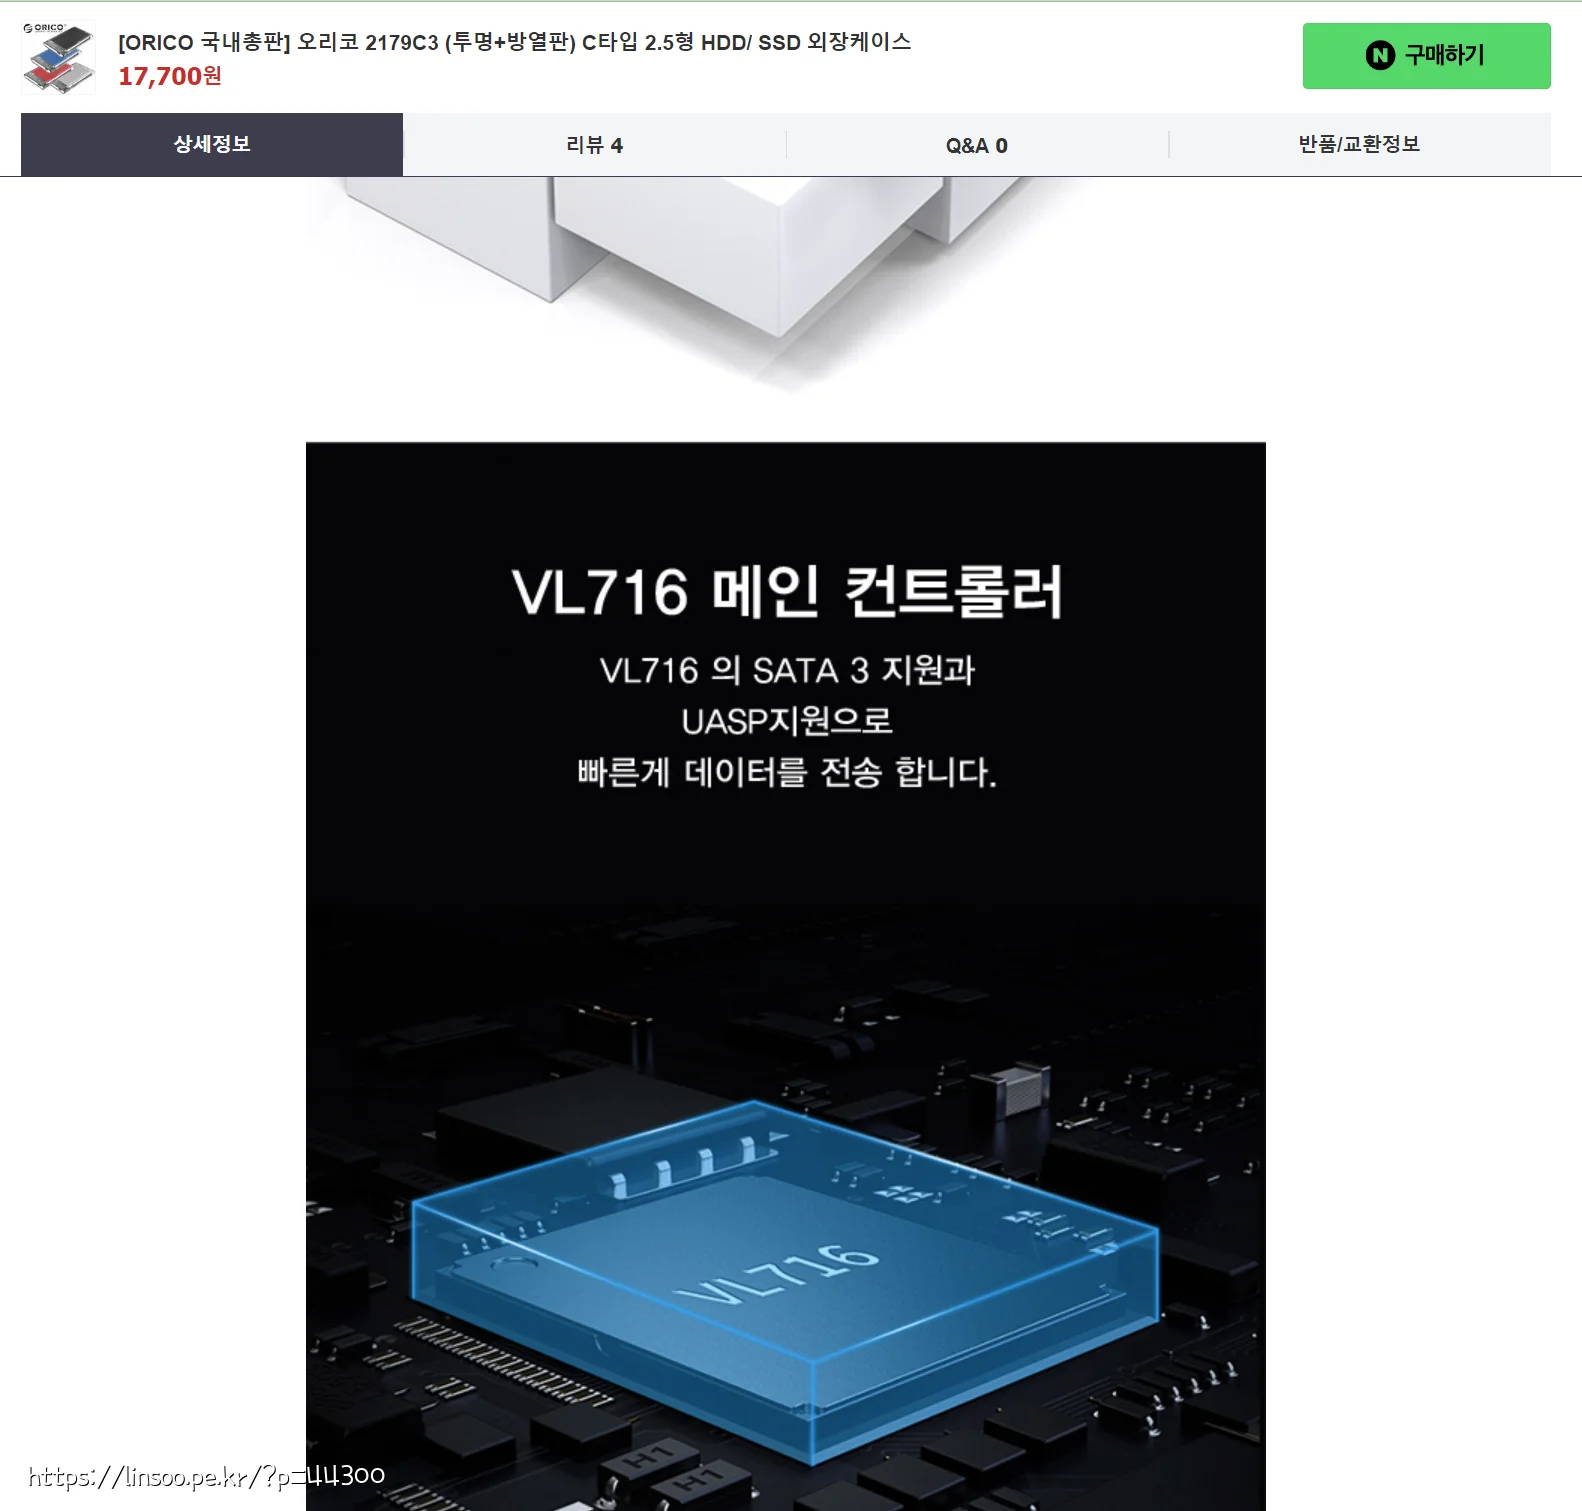 국내 제품소개란에 써 있는 VL716 칩